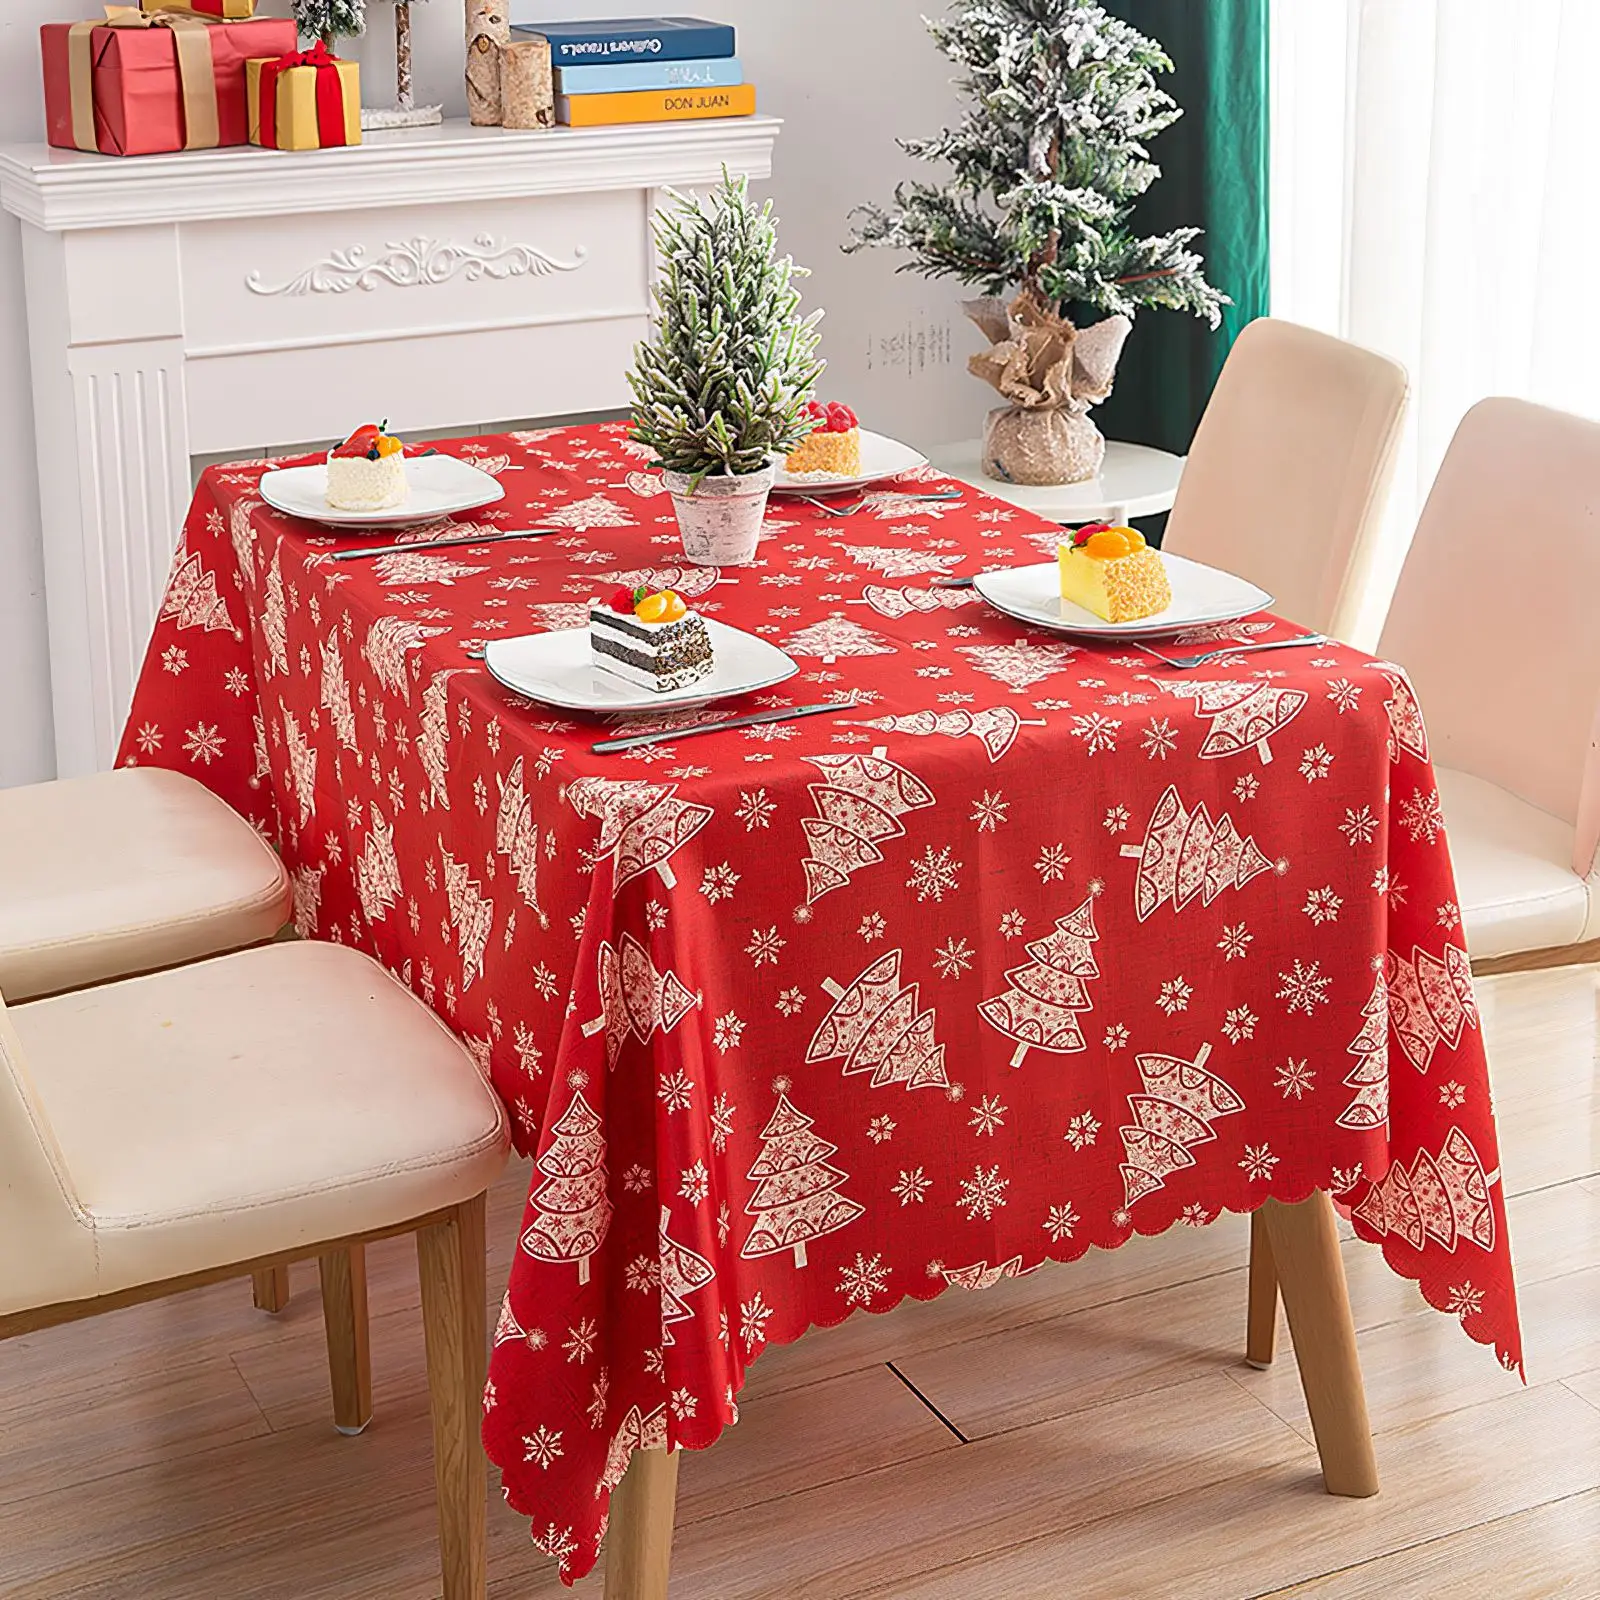 

Прямоугольная атласная Скатерть для ресторана, банкета, скатерть из полиэстера с рождественской тематикой, столовая ткань